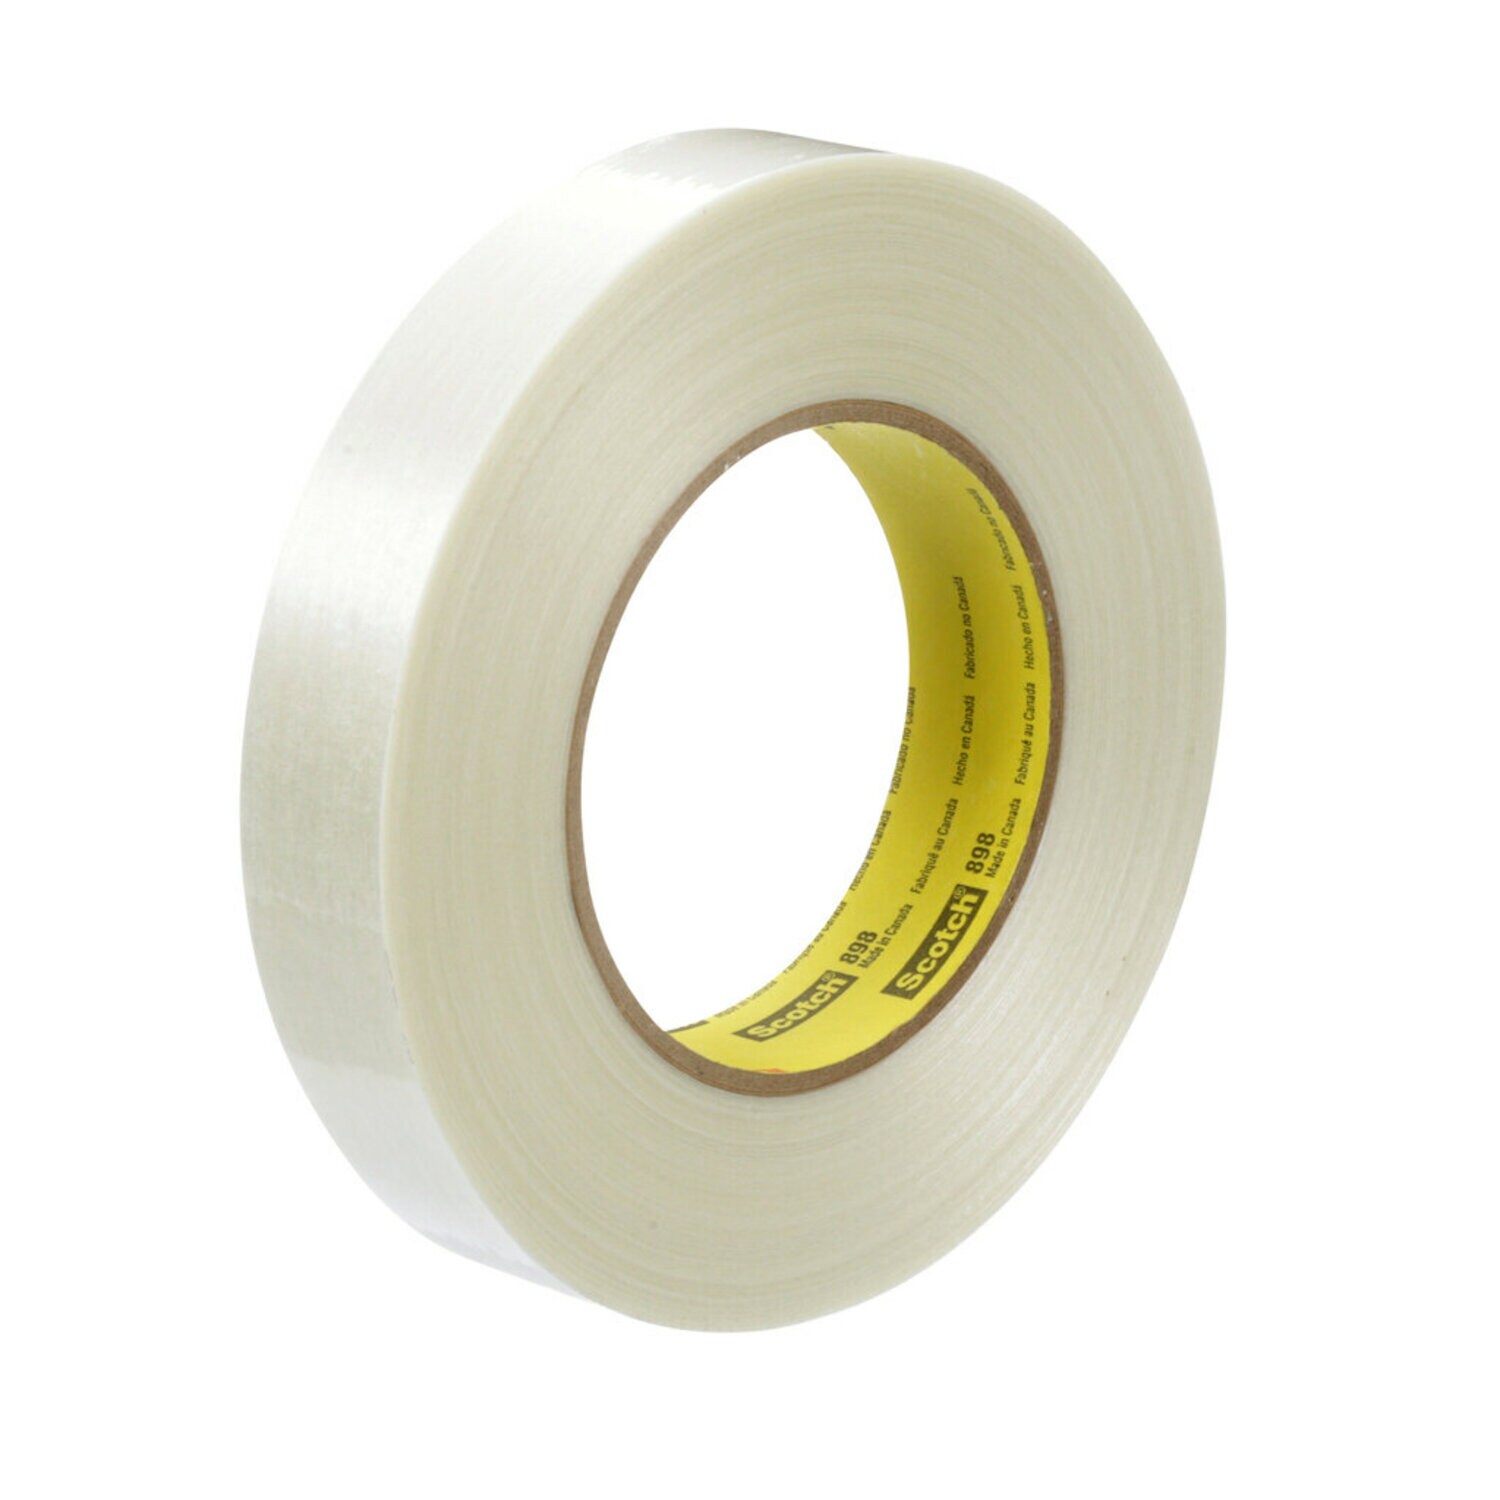 7000001229 - Scotch Filament Tape 898, Clear, 24 mm x 55 m, 6.6 mil, 36 rolls percase